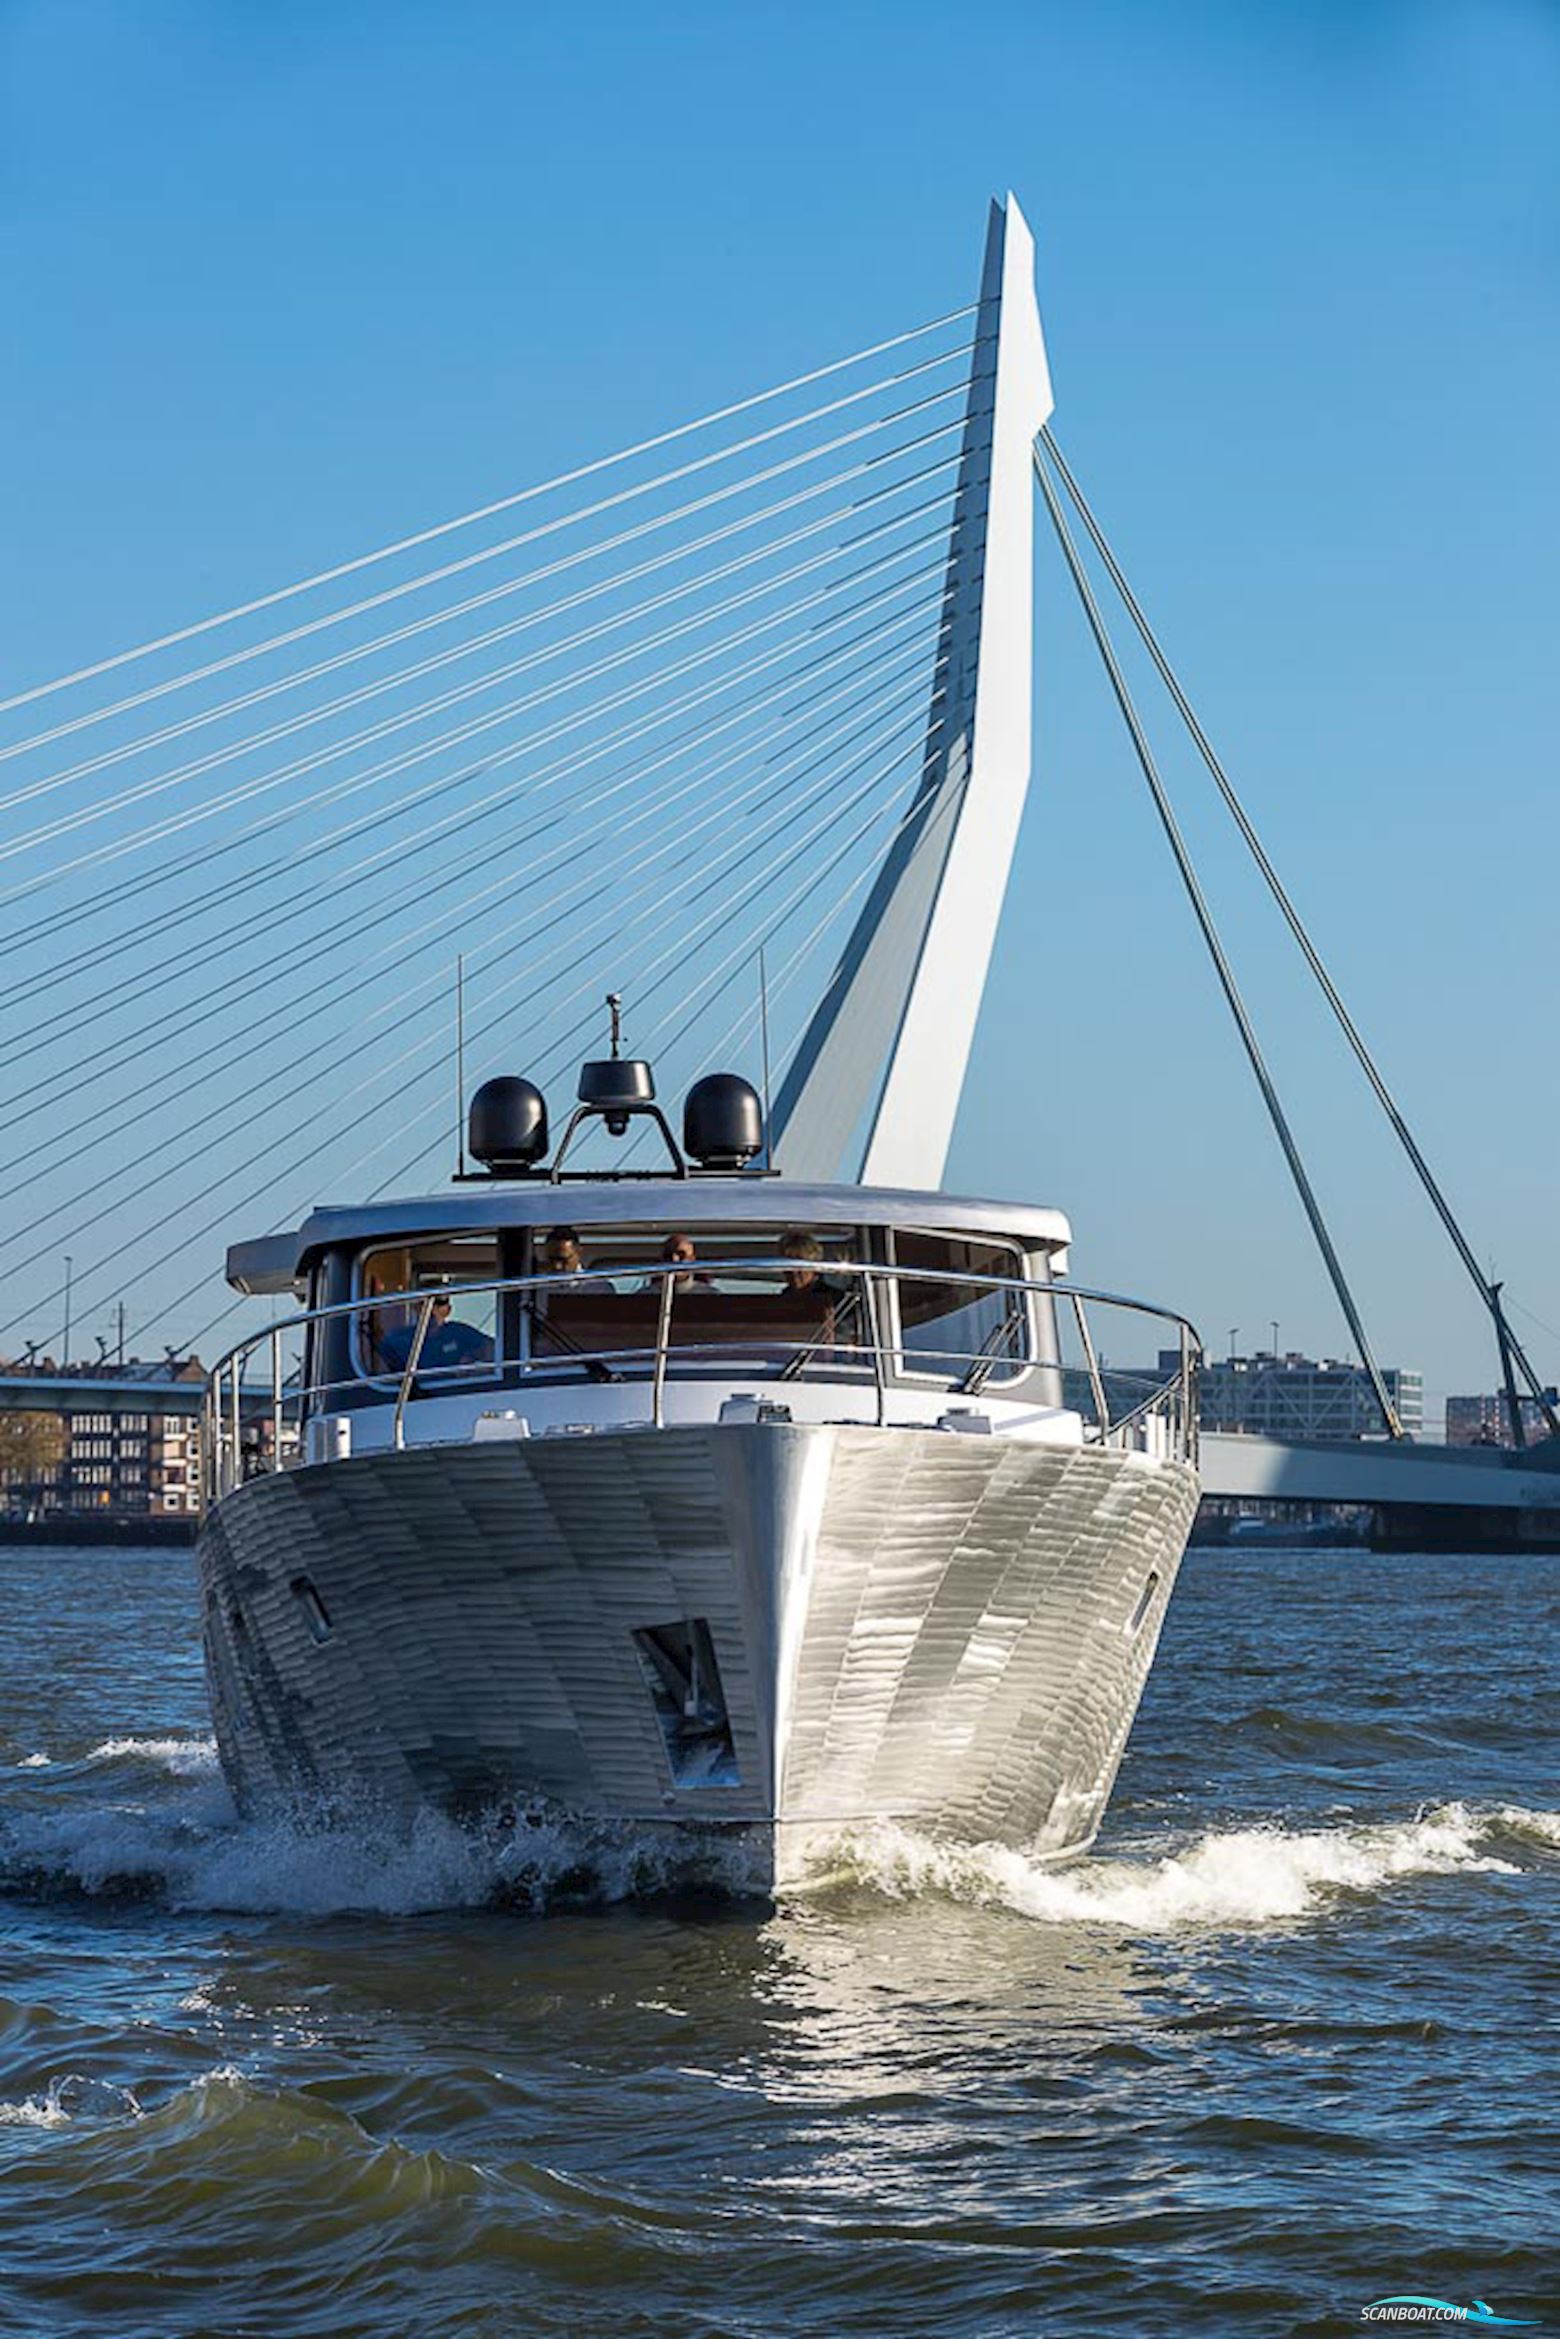 Deep Water Yachts Korvet18LowRider Motorbåd 2022, med John Deere motor, Holland